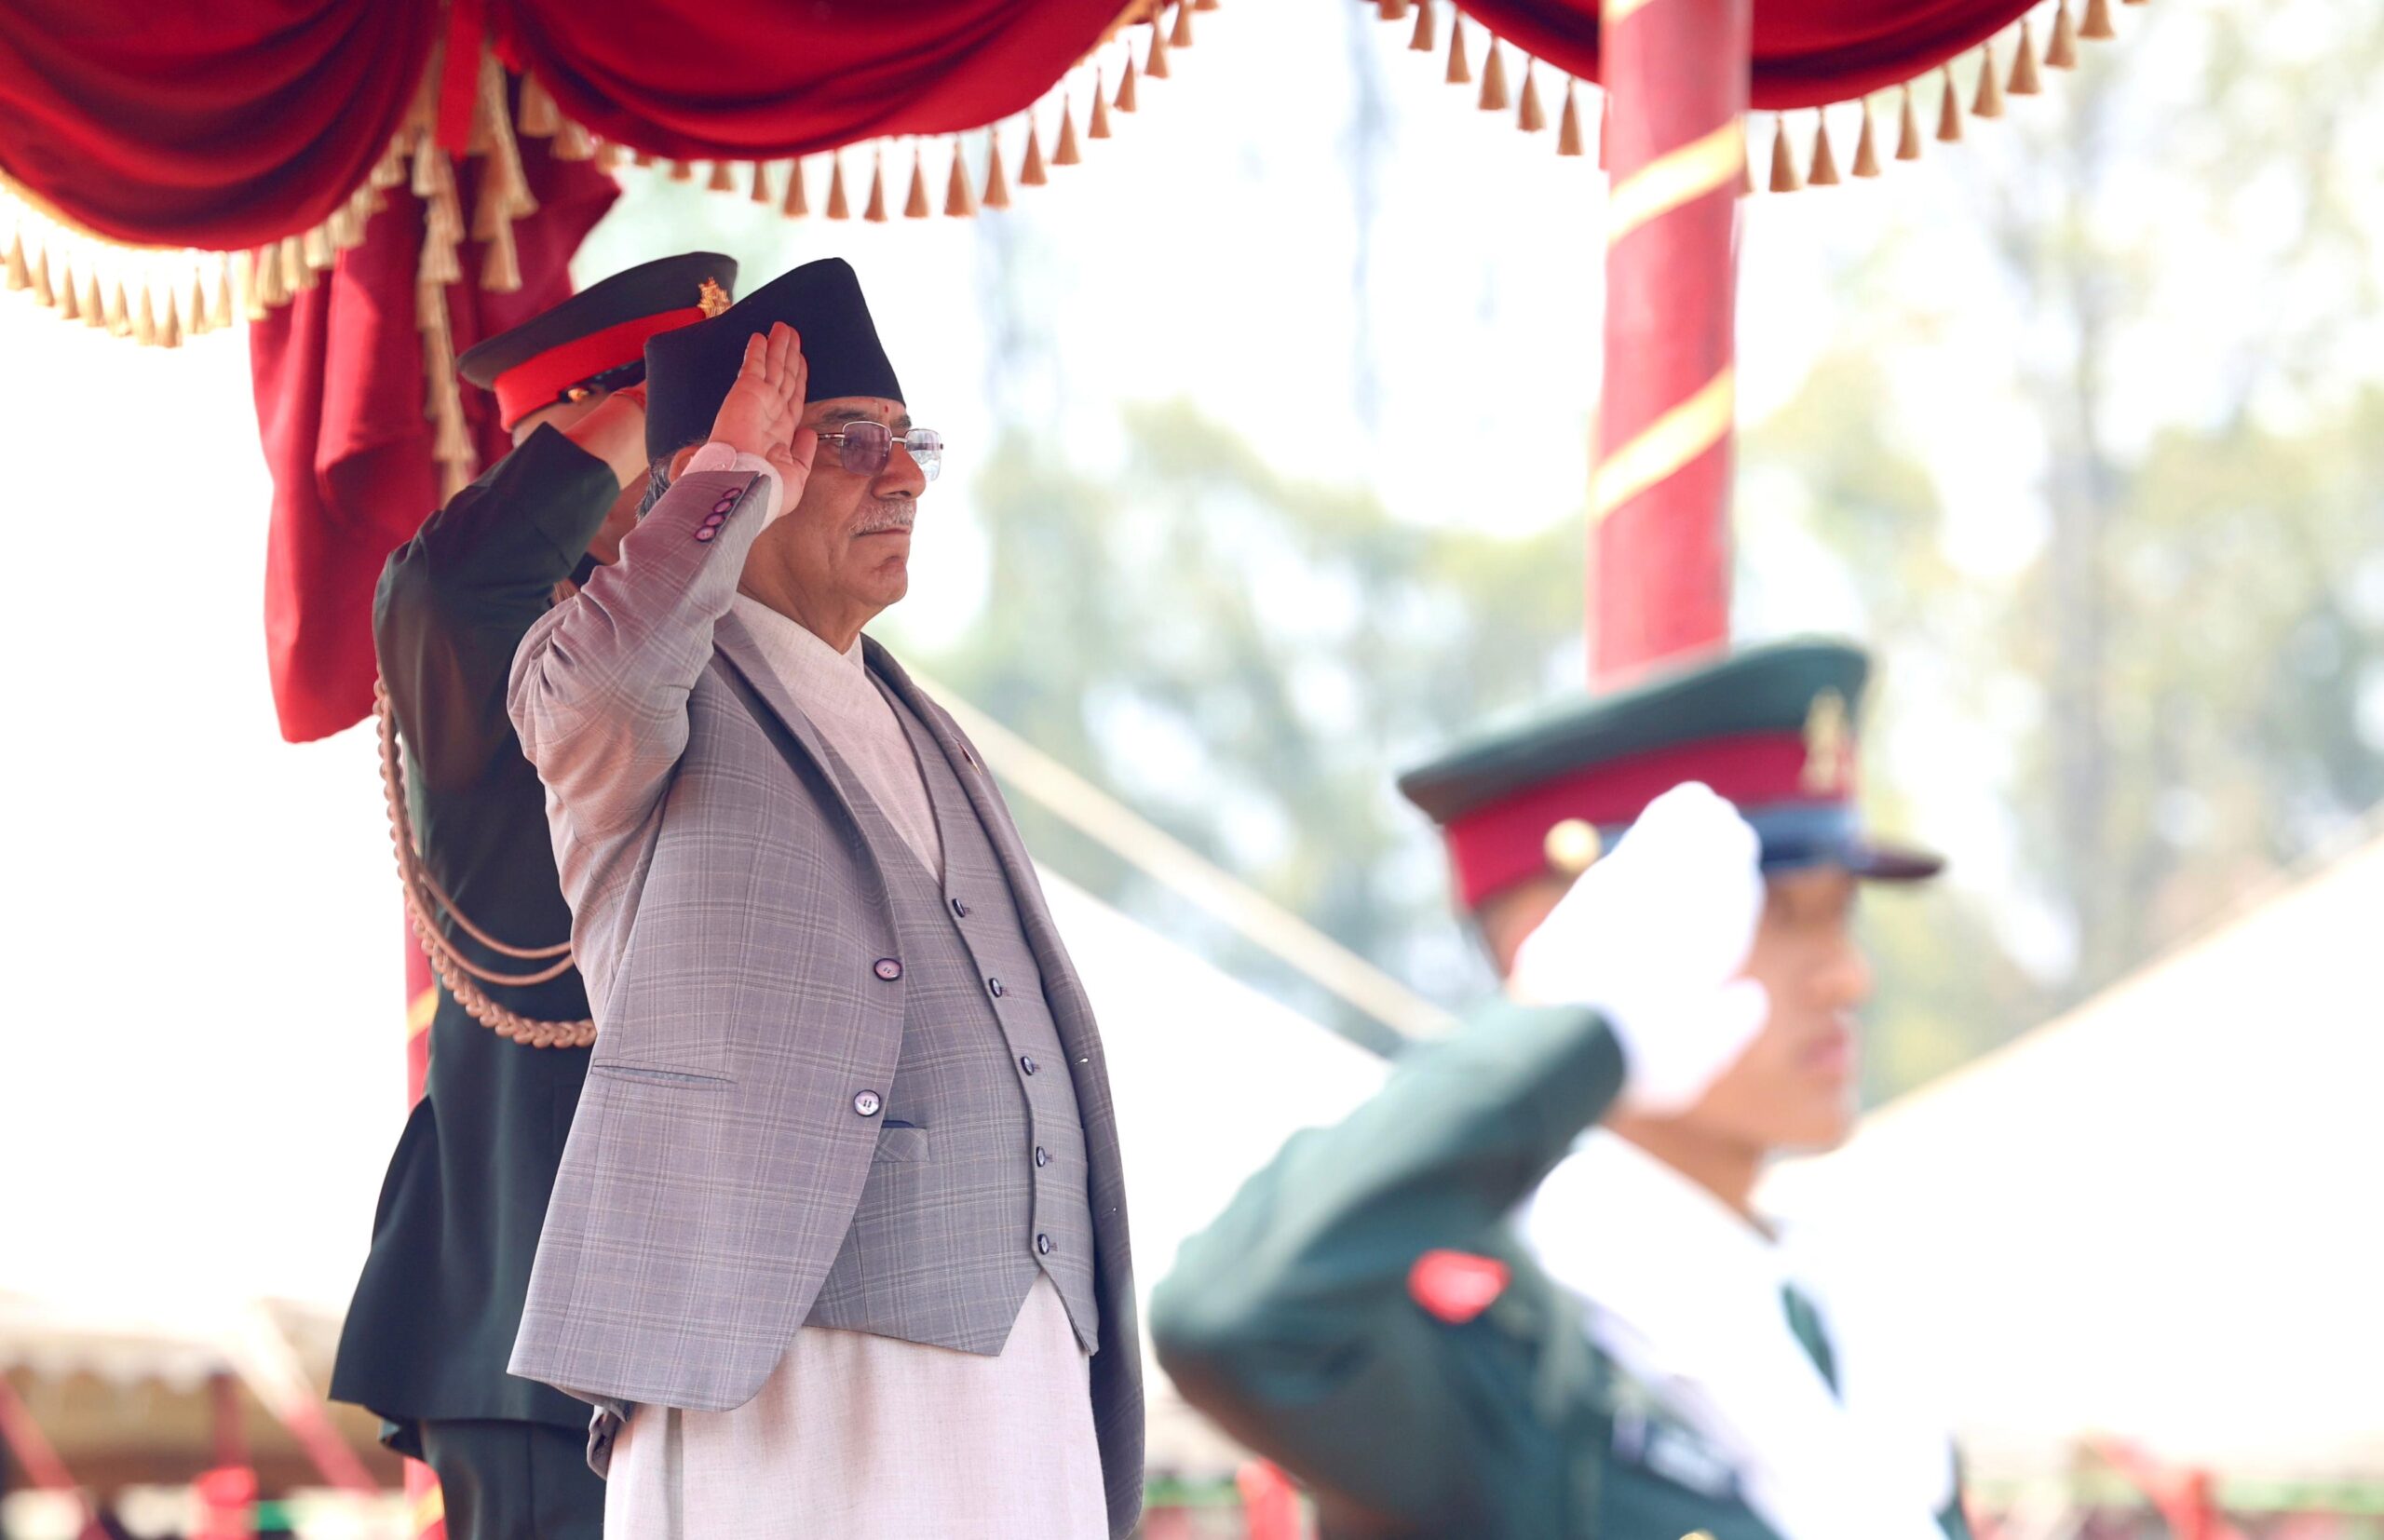 ‘शान्ति सैनिकहरूको देश’ का रूपमा विश्वसामु परिचित गराउन नेपाली सेनाको योगदान महत्त्वपूर्ण : प्रधानमन्त्री